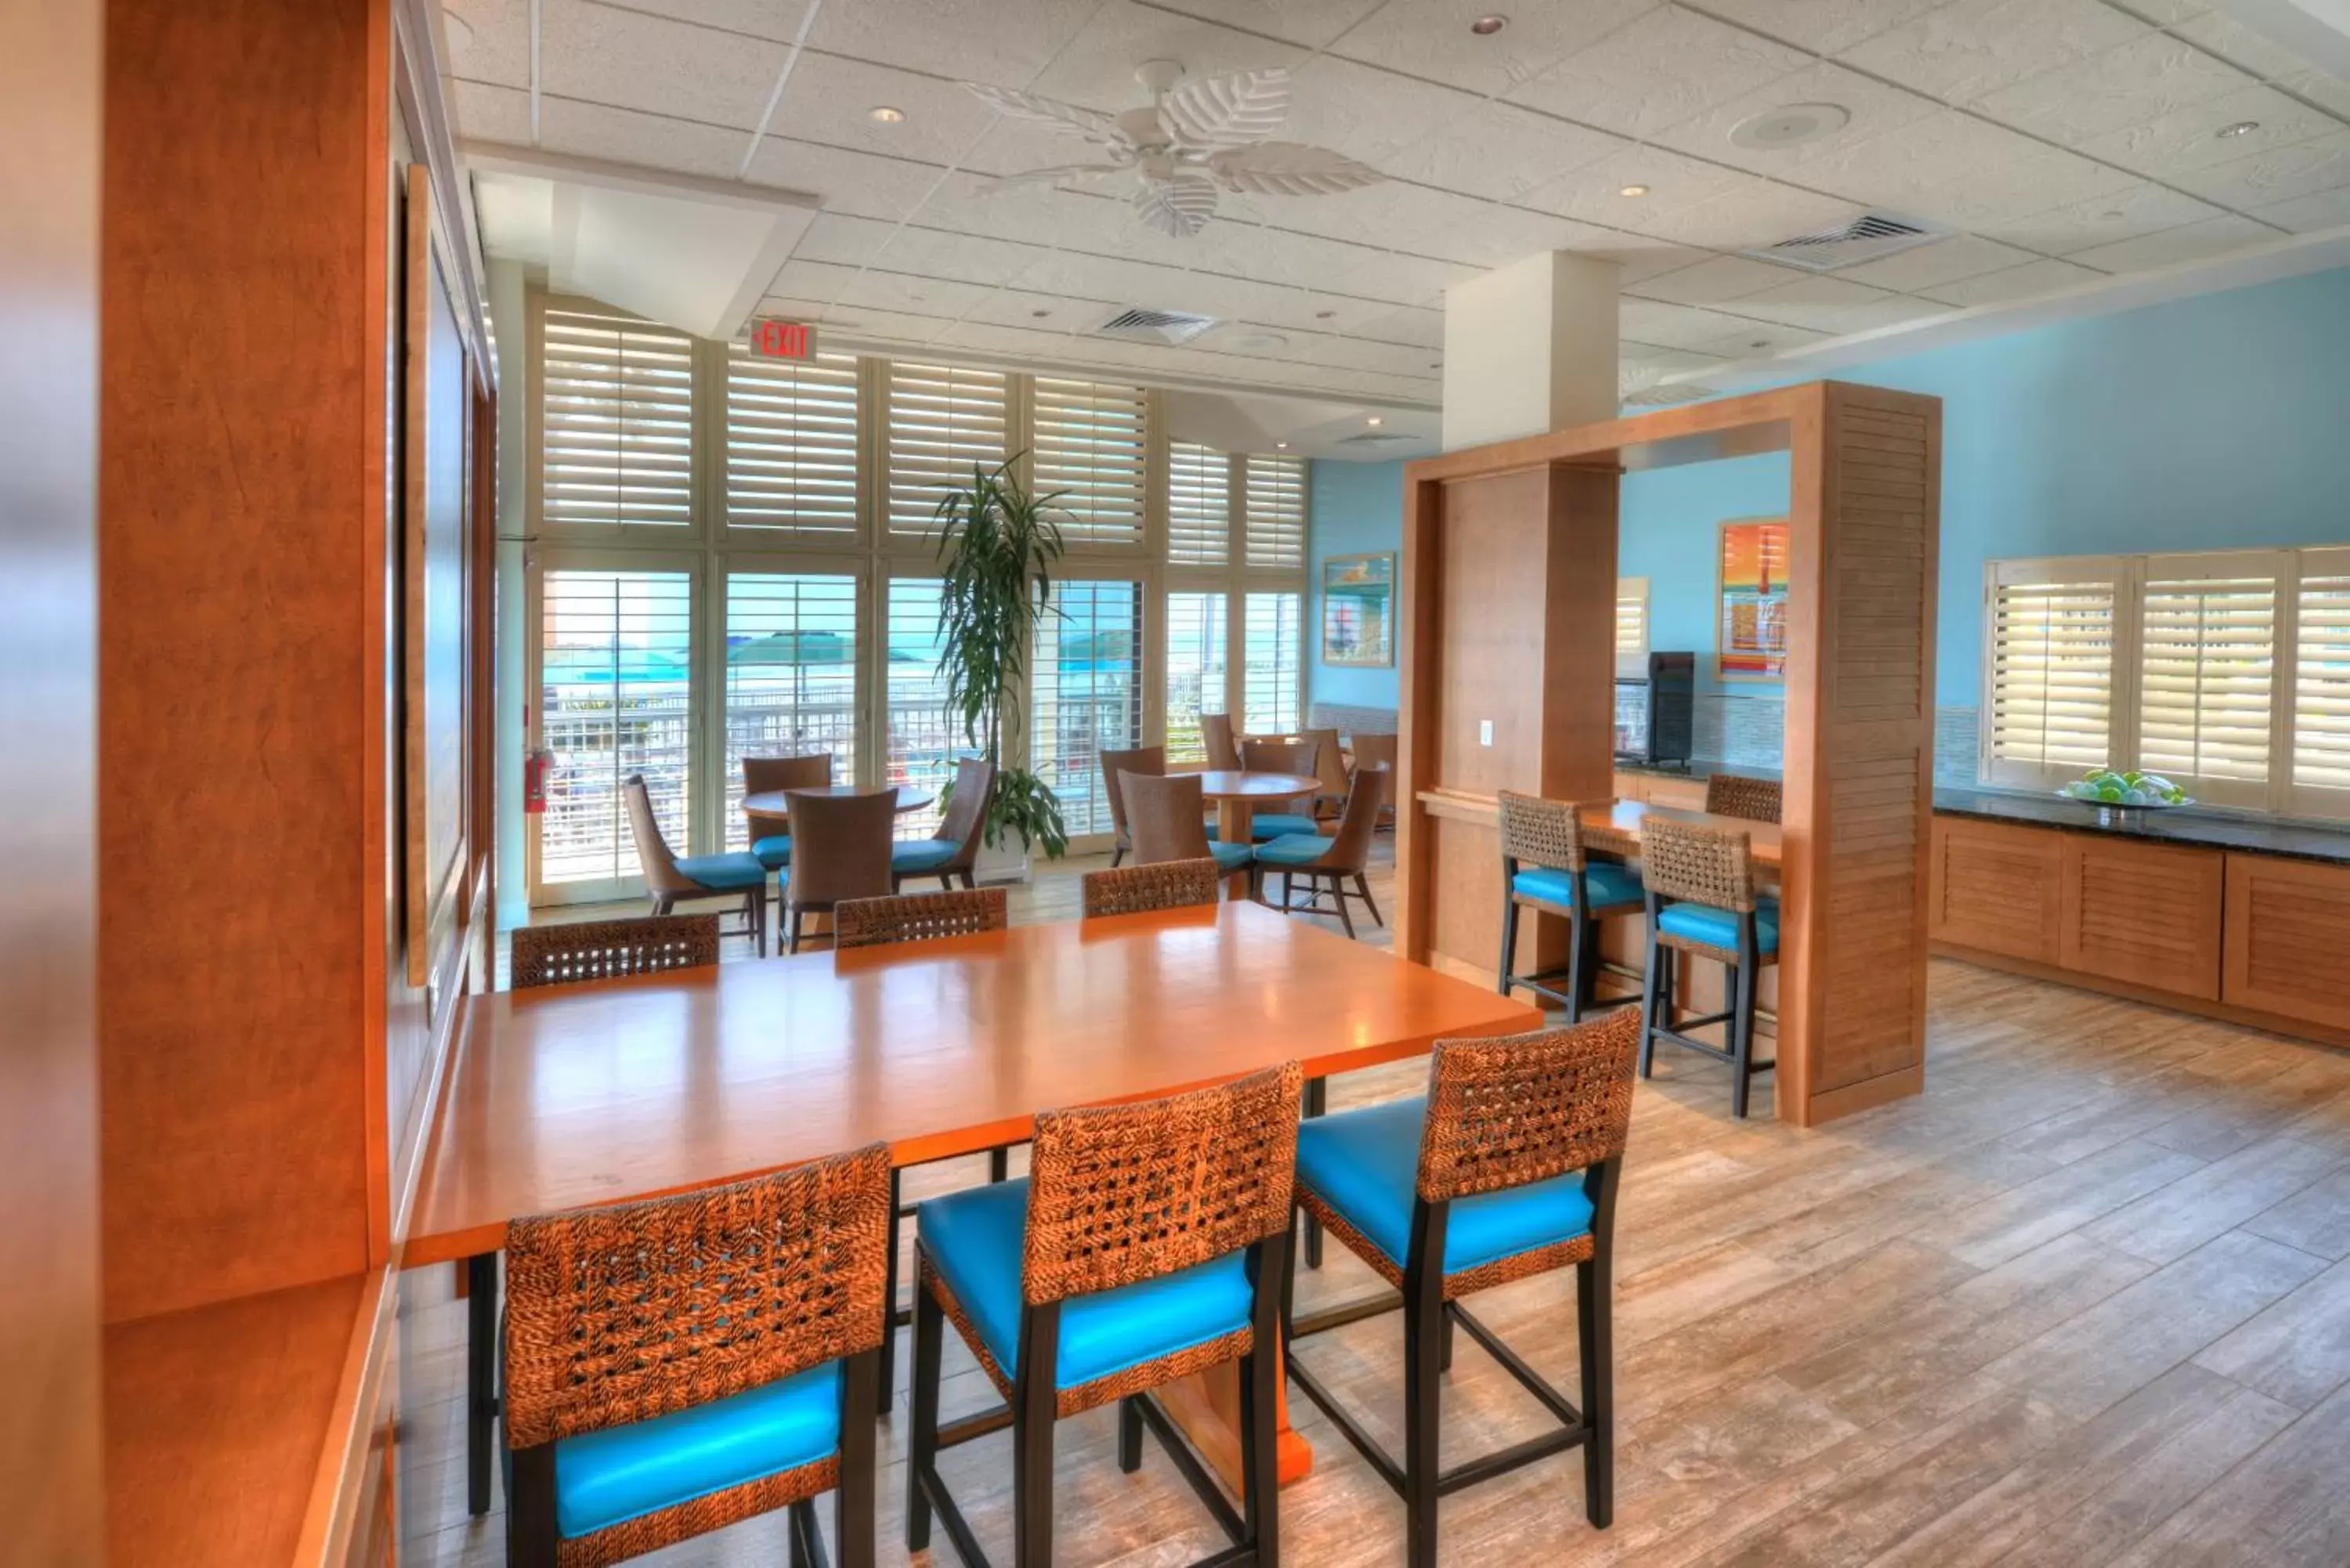 Area and facilities in Bahama House - Daytona Beach Shores